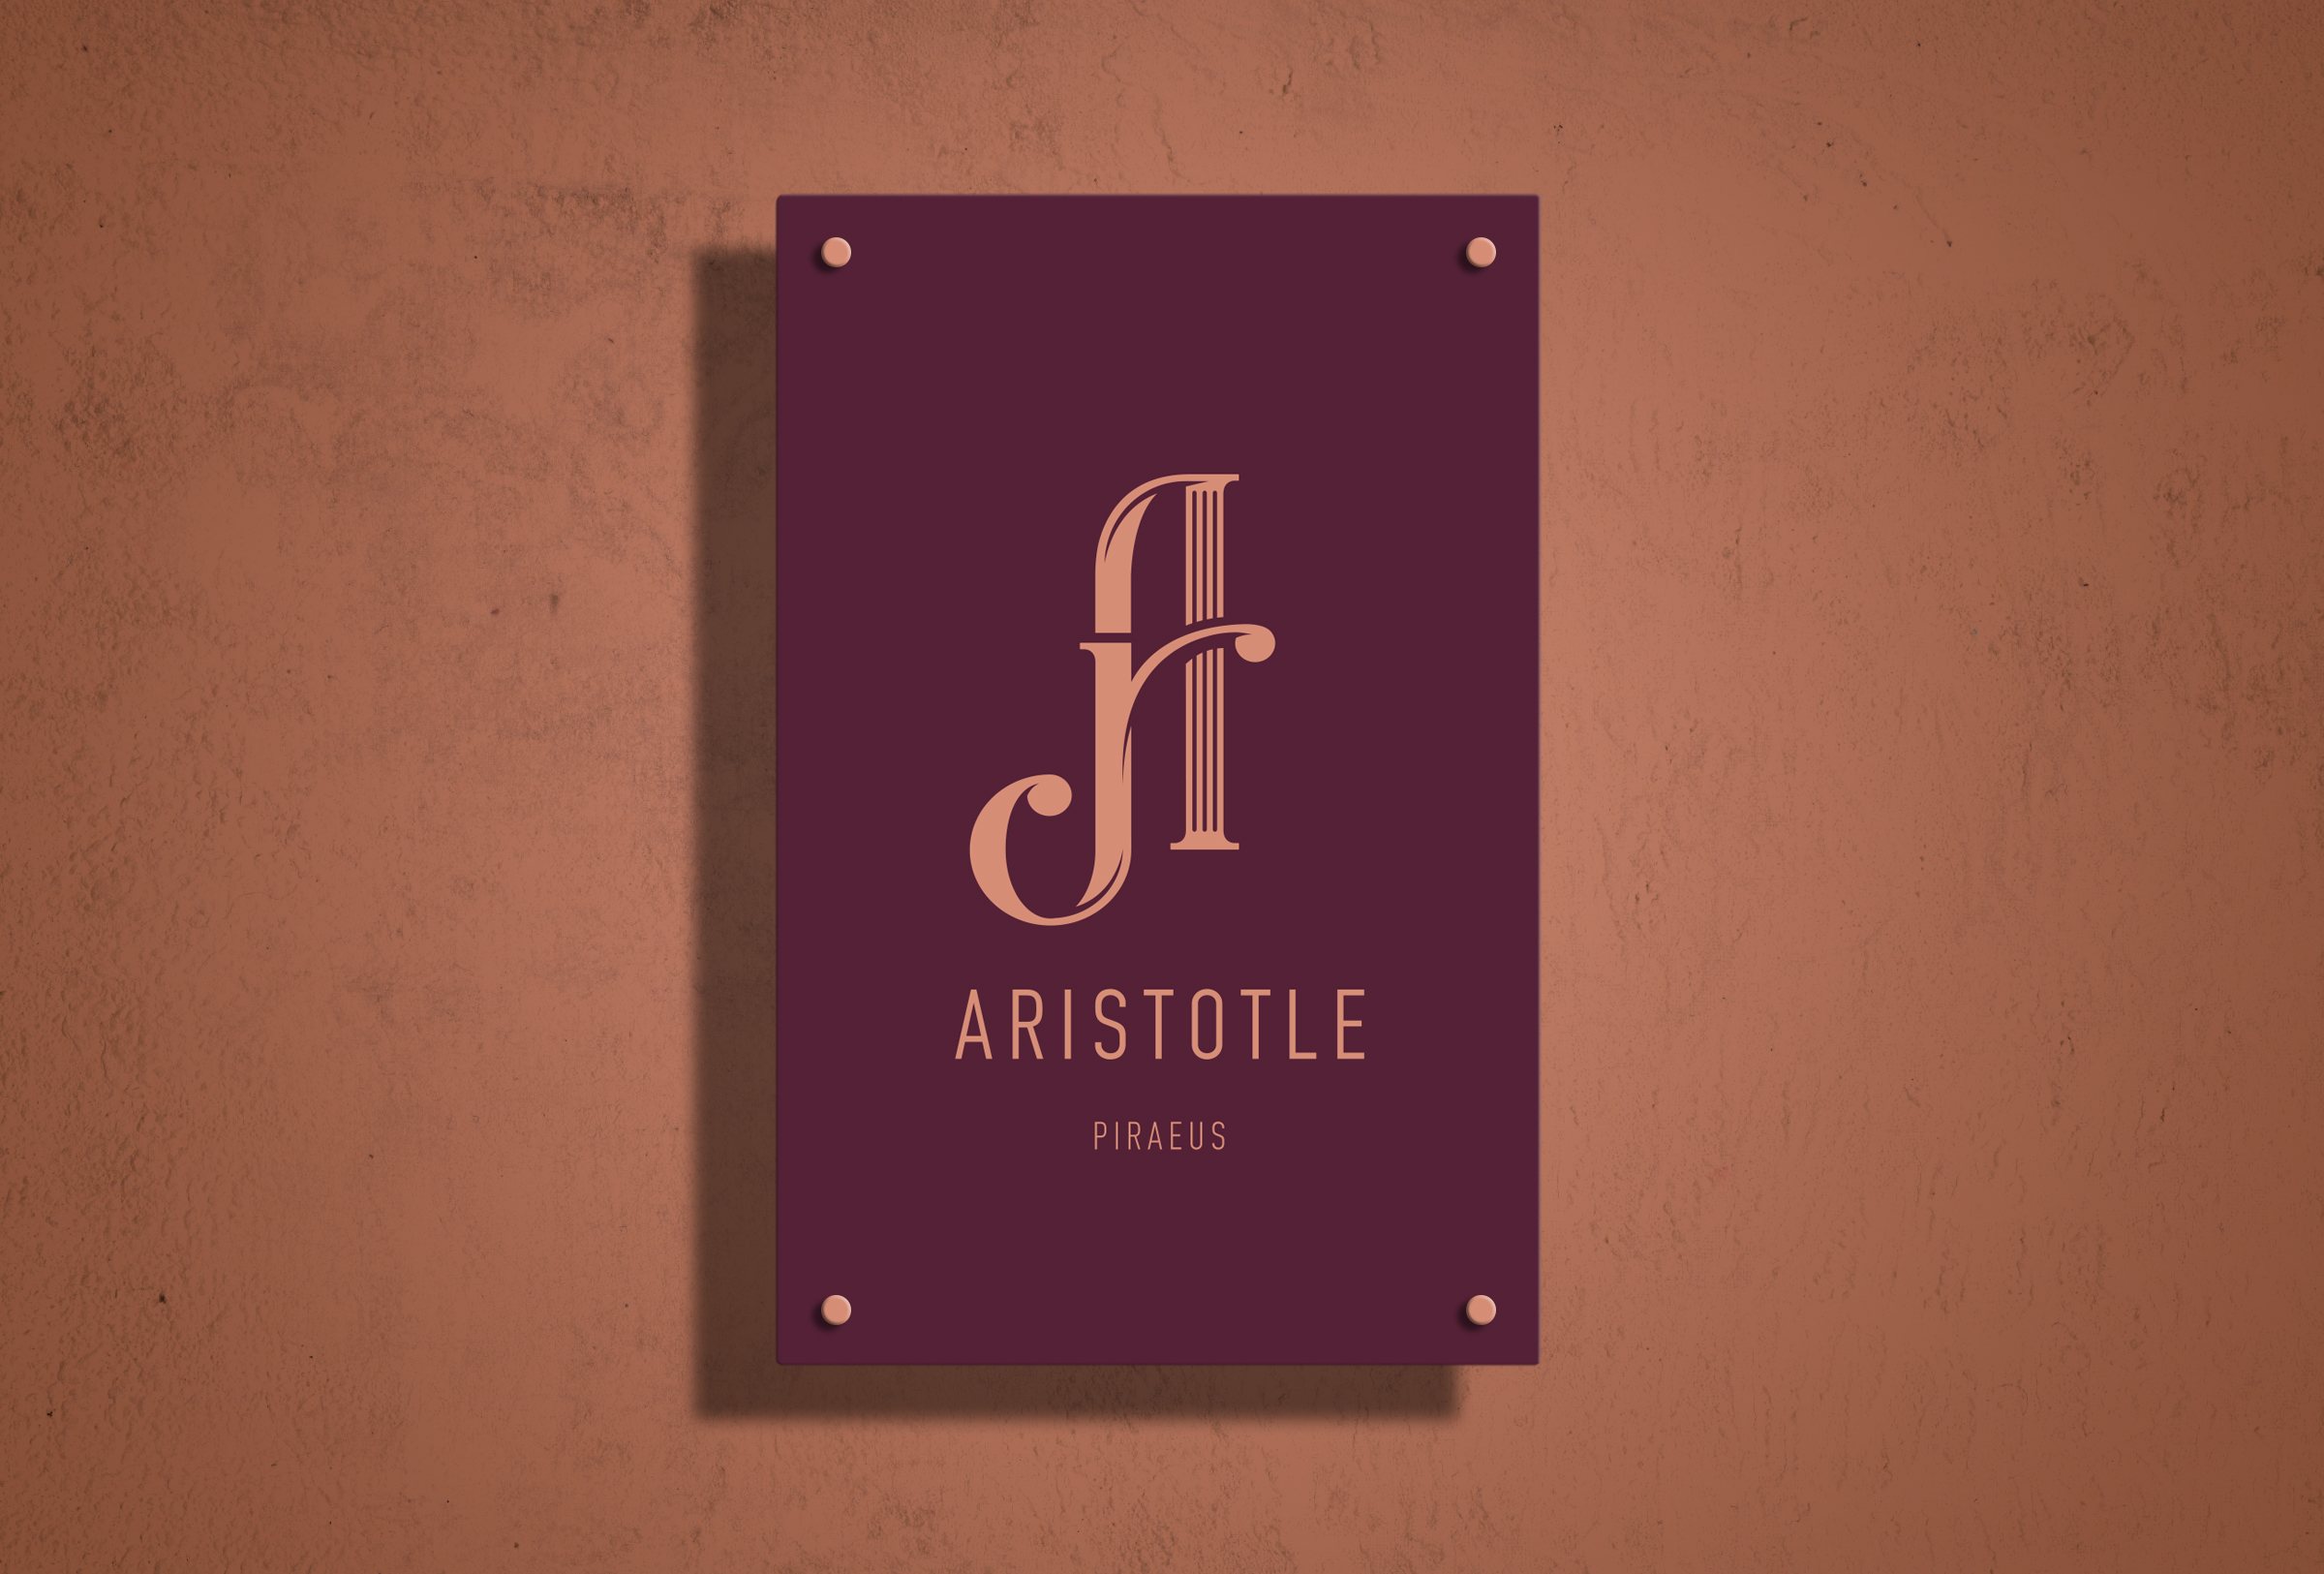 Ar16B 1 - Aristotle Piraeus - The Design Boutique -Ar16B 1